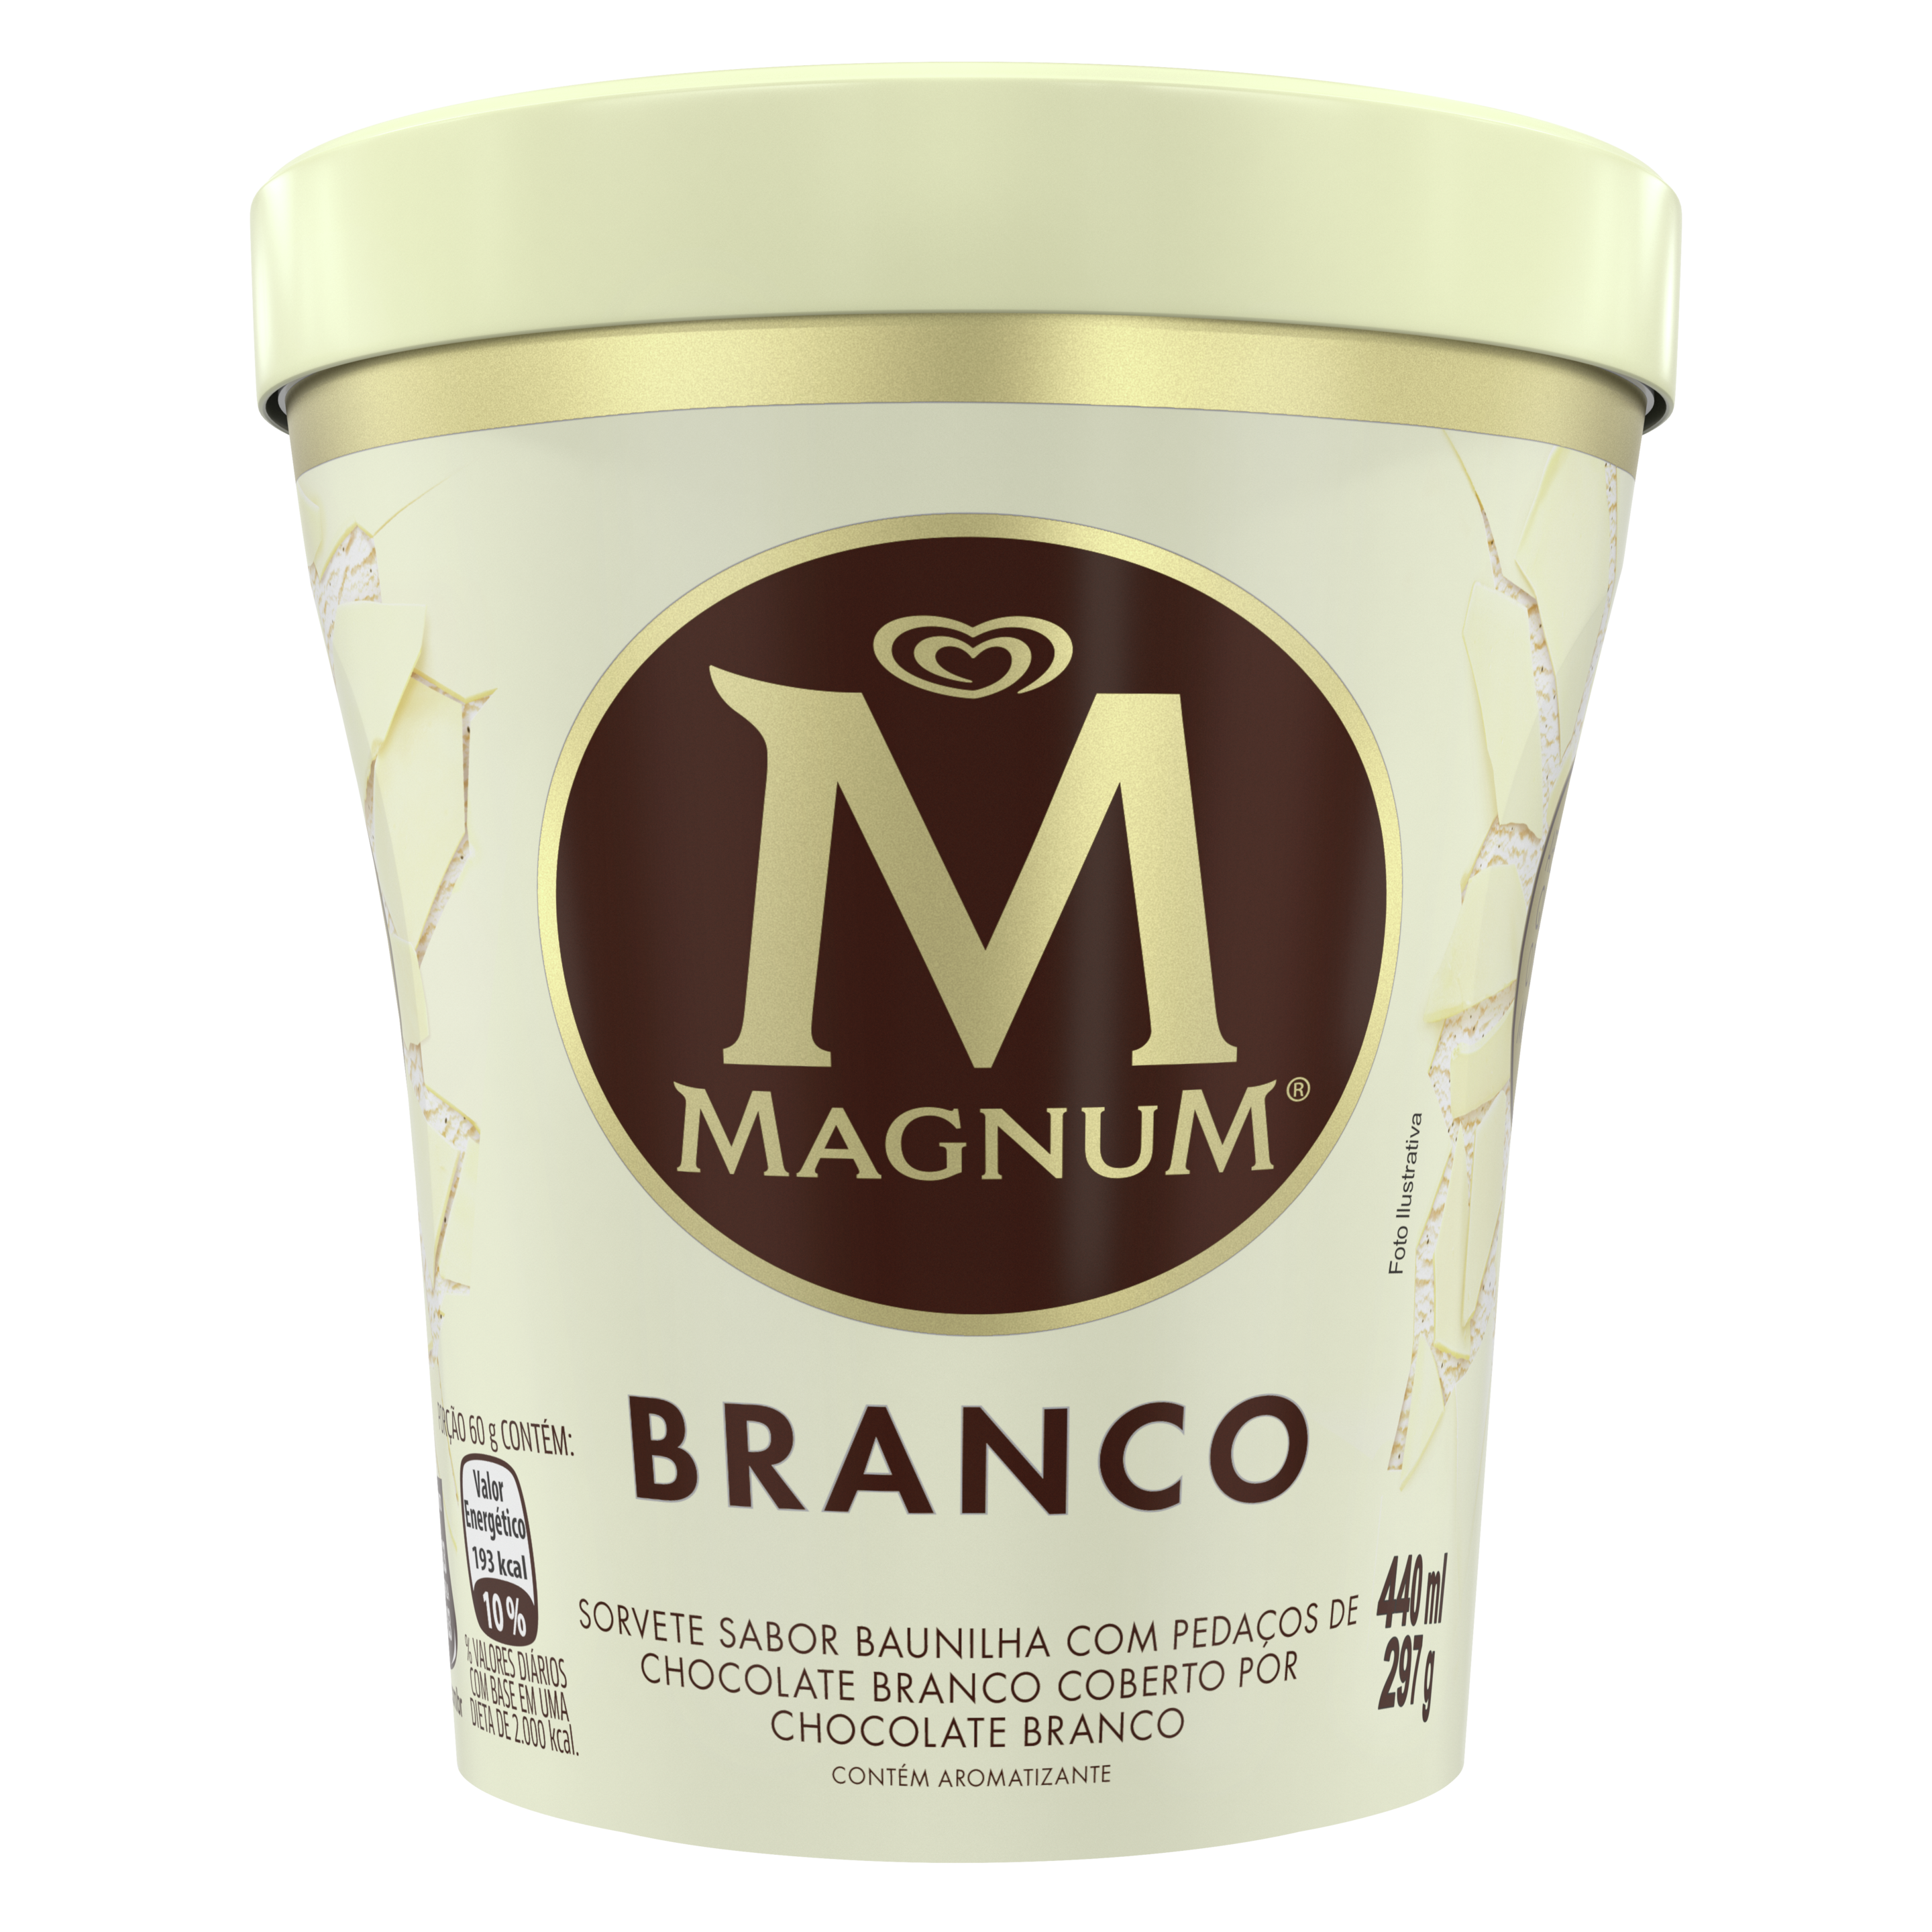 Descubra uma experiência única com o Novo formato de Magnum. Equilíbrio perfeito do cremoso e aveludado sorvete de baunilha com as irresistíveis e crocantes lascas de chocolate branco Magnum. Tudo isso